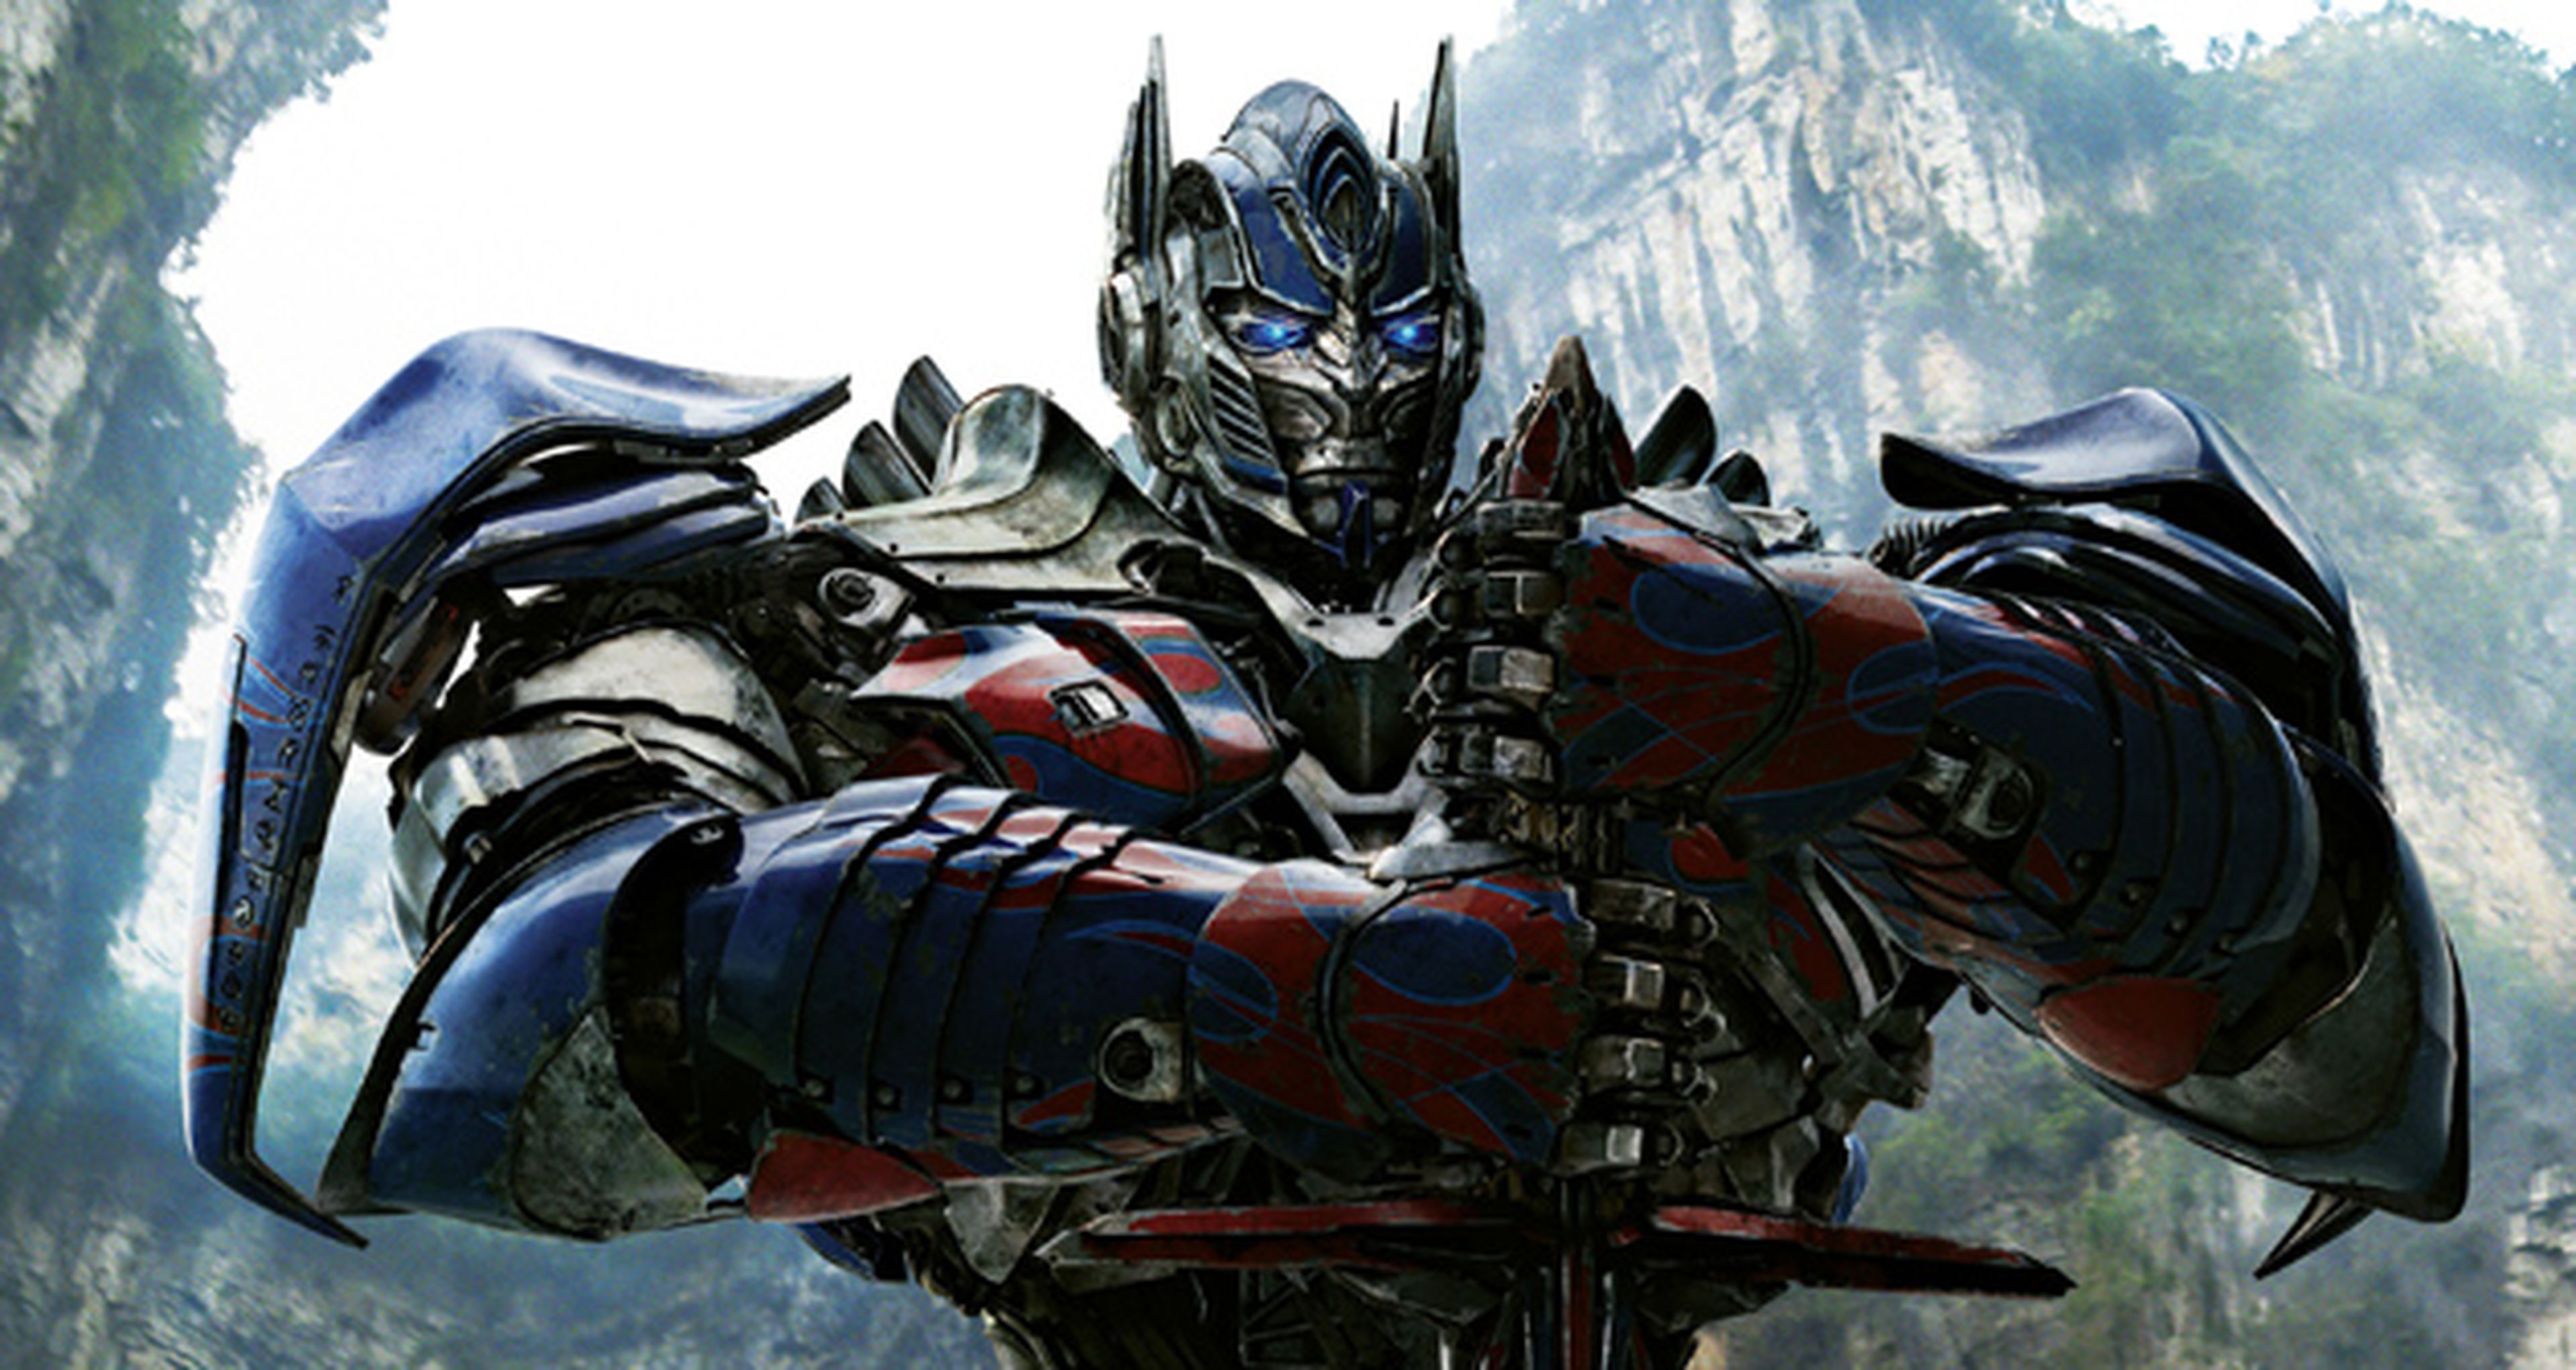 Transformers: La era de la extinción es la película más taquillera de la historia de China